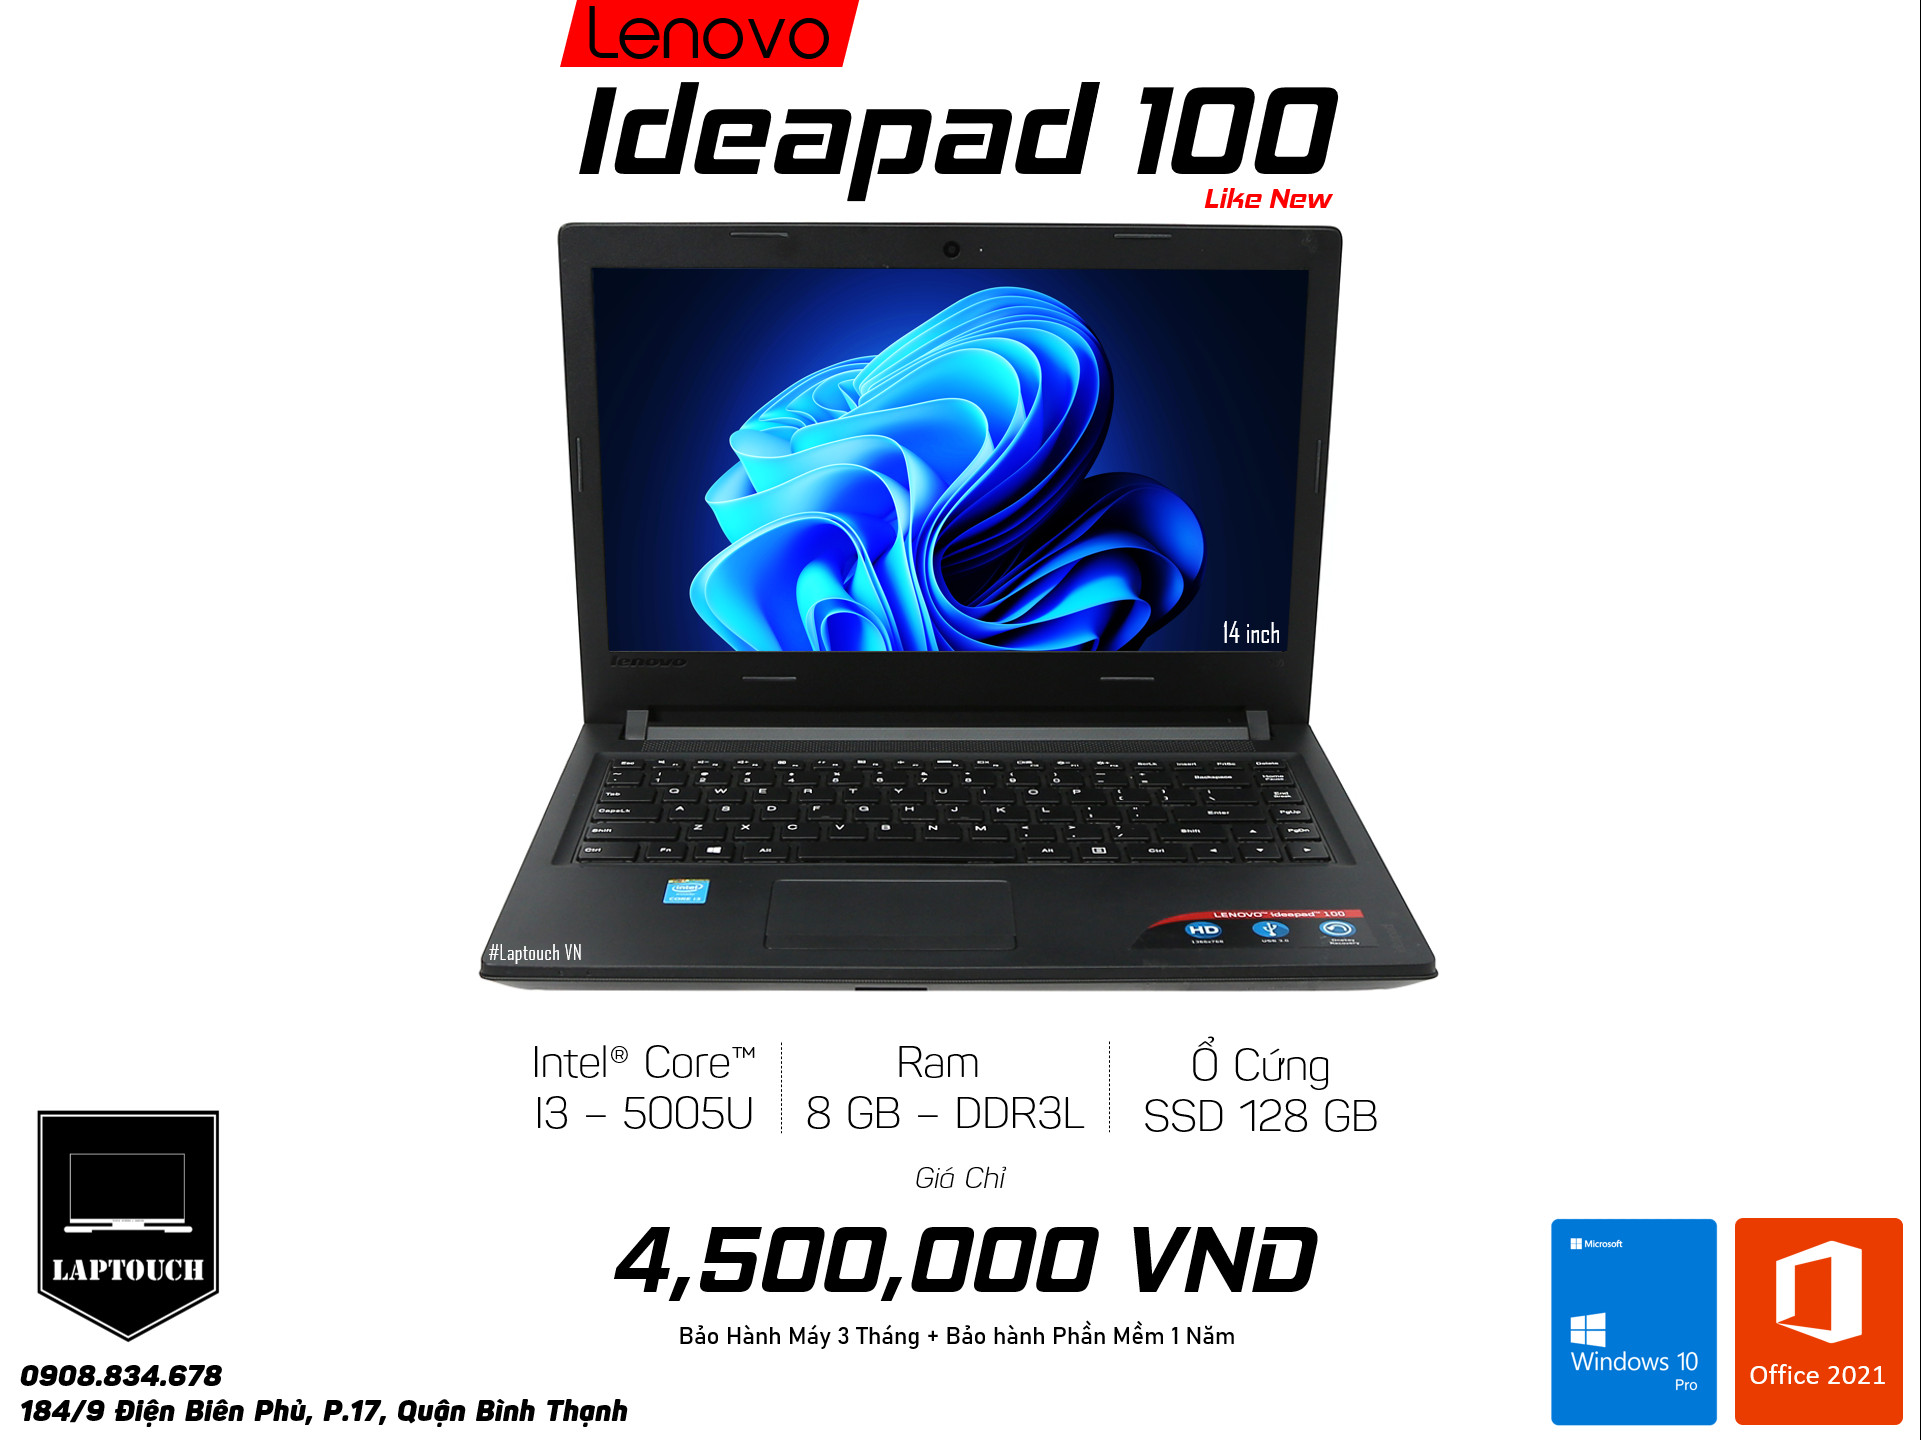 Lenovo Ideapad 100